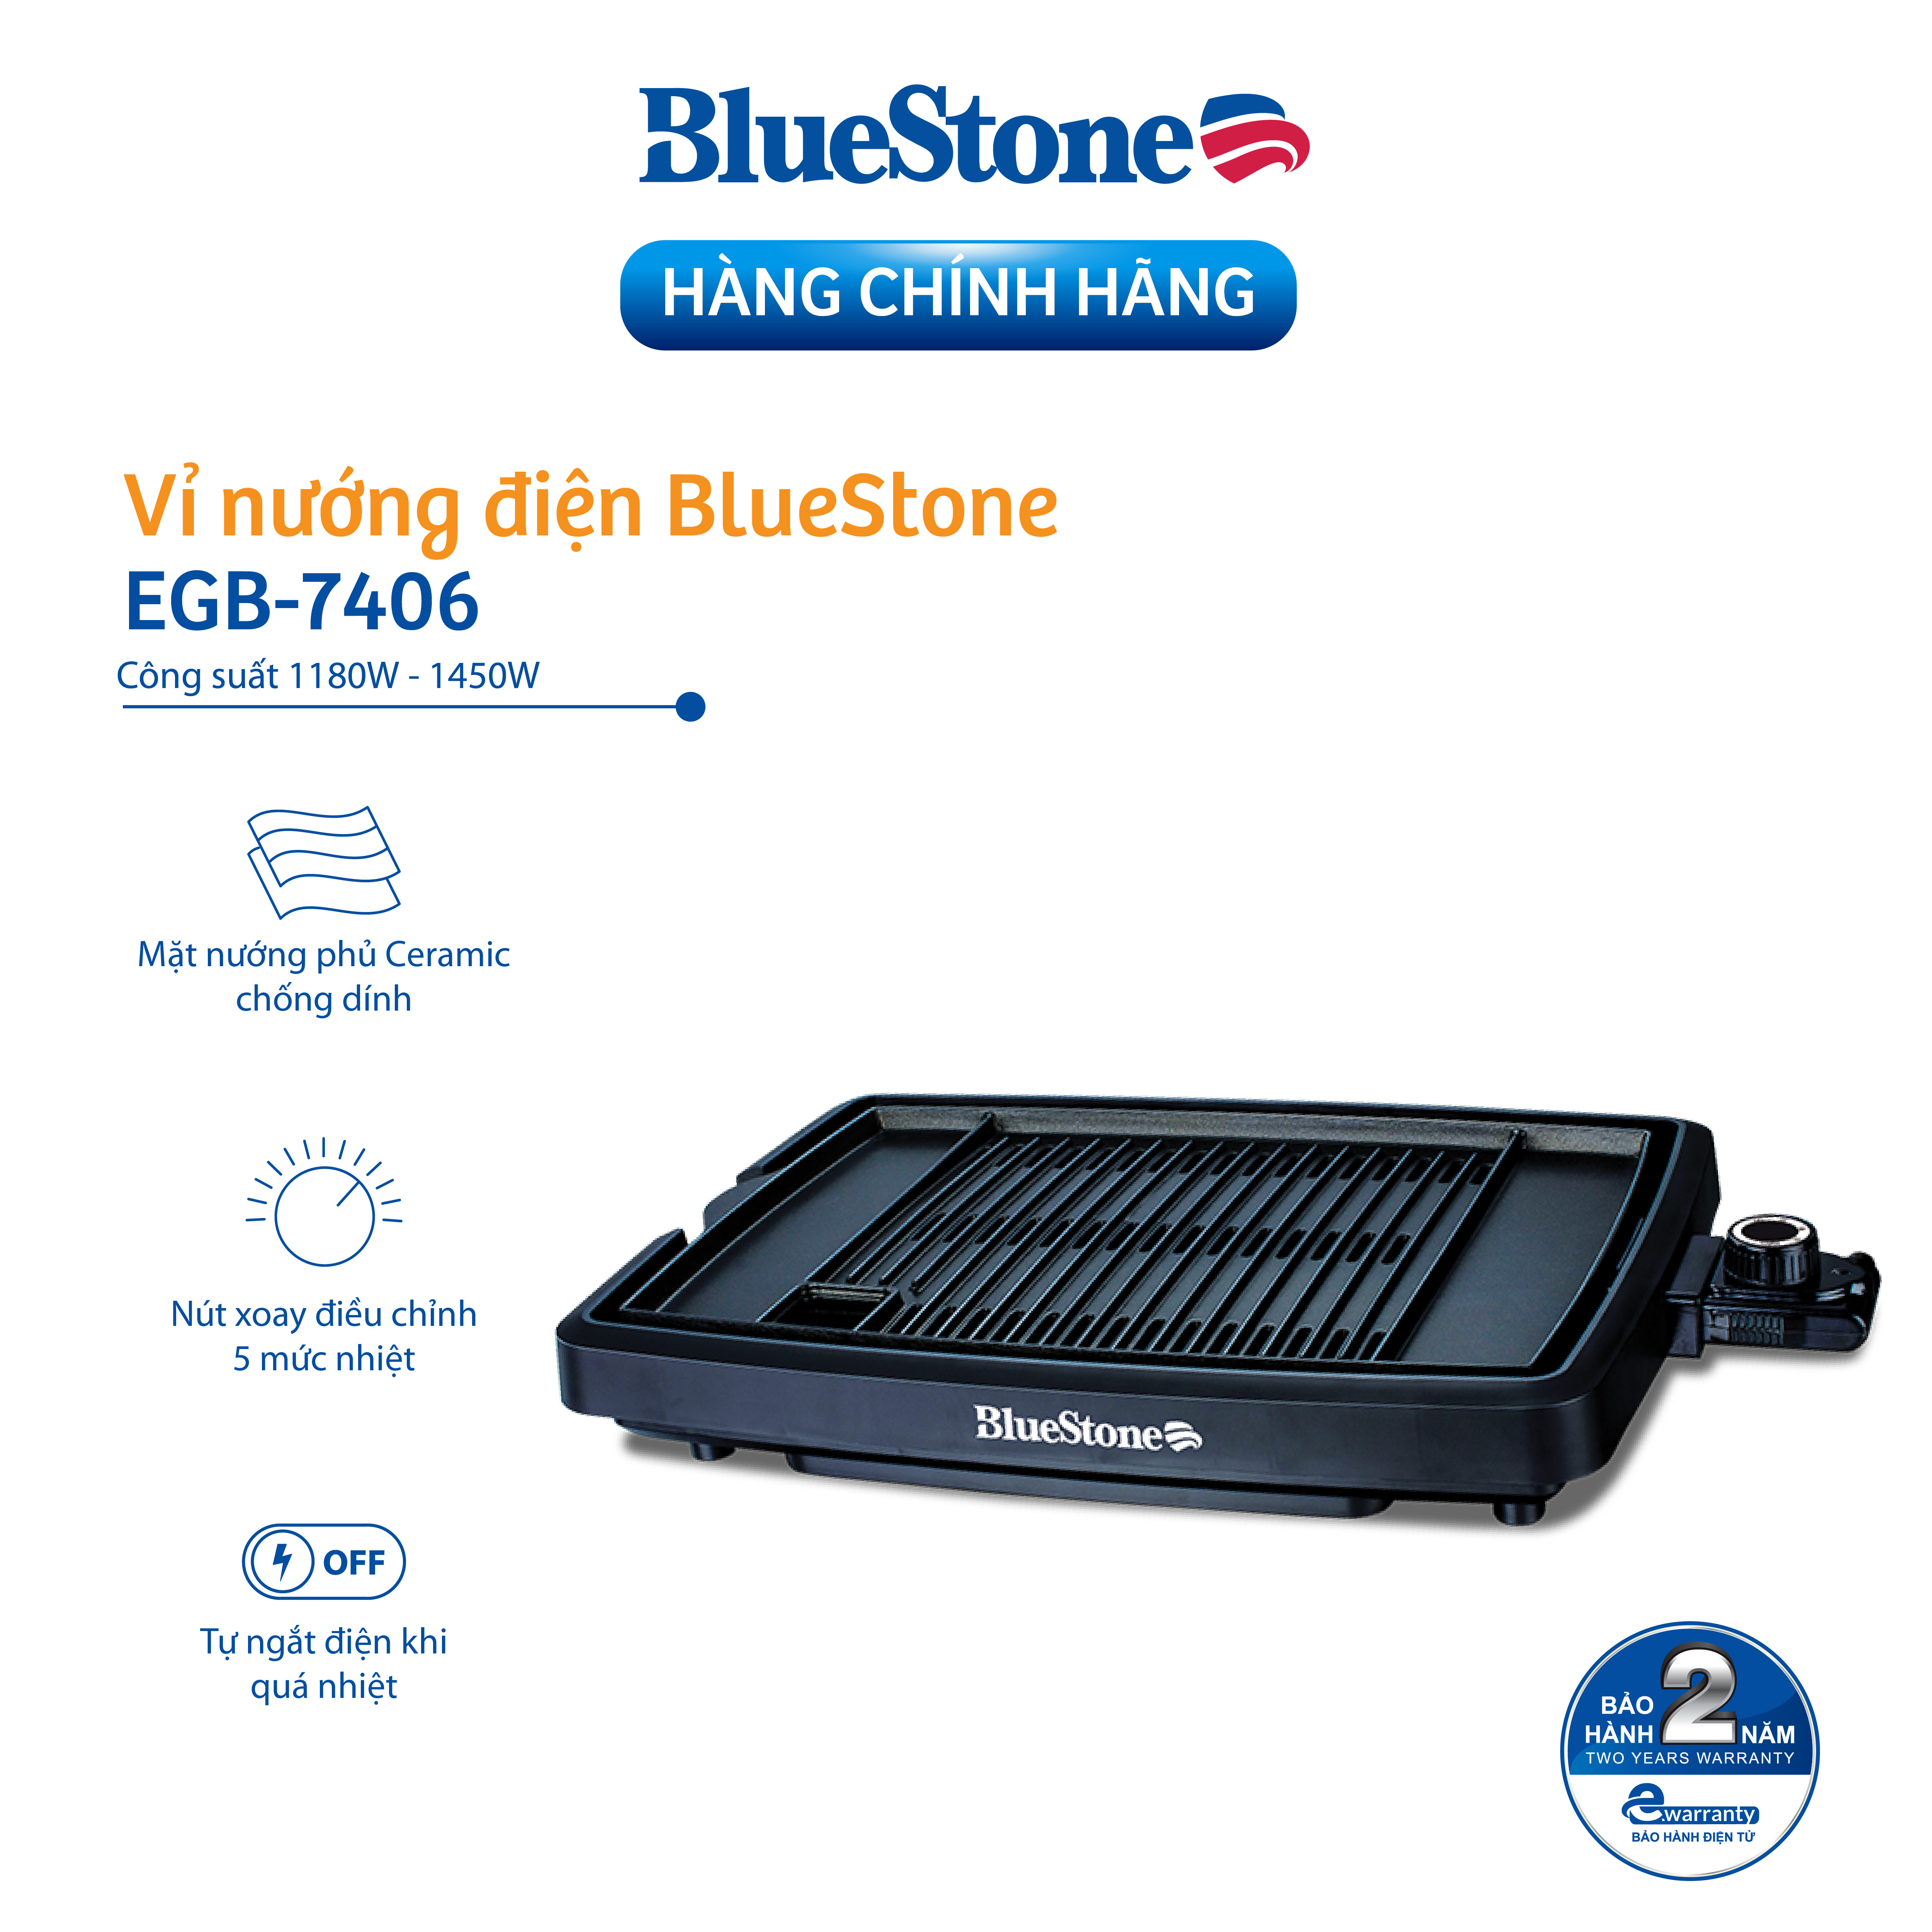 Vỉ Nướng Bluestone EGB-7406 (1450W) - Hàng chính hãng